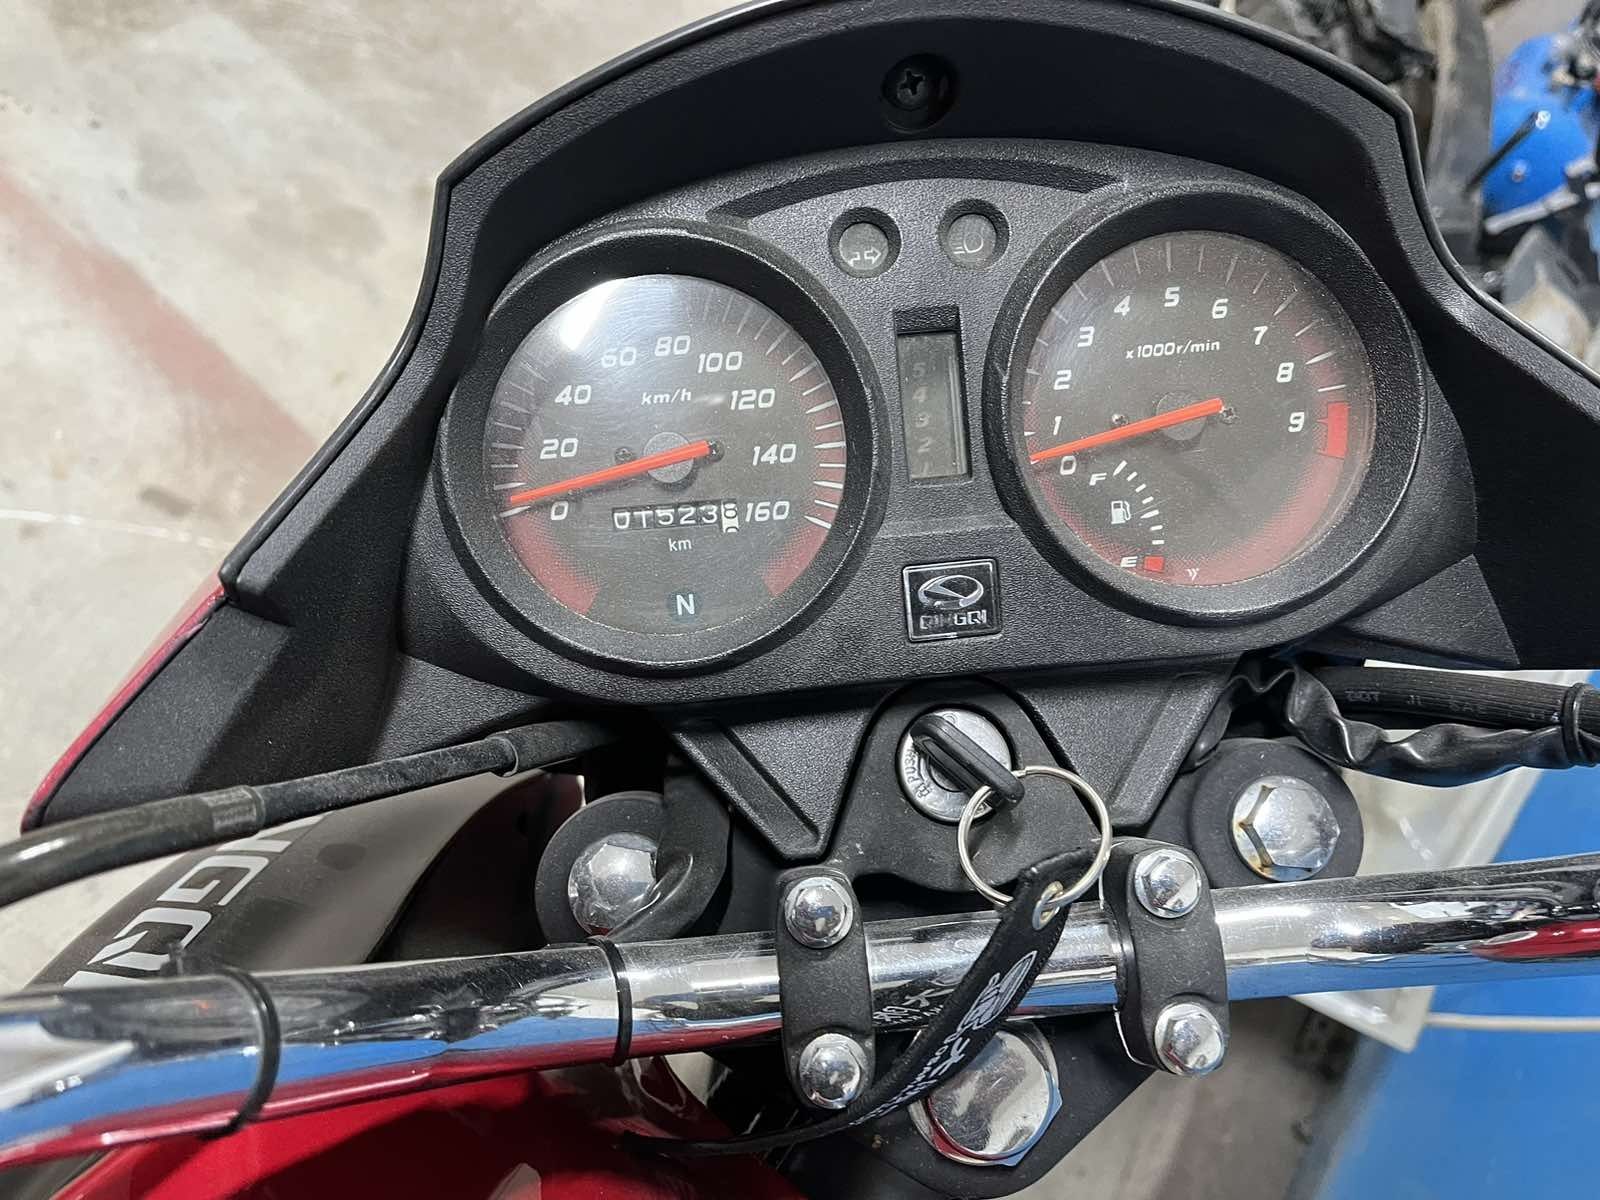 Мотоцикл skybike 200 (Не lifan, Geon, Mustang)